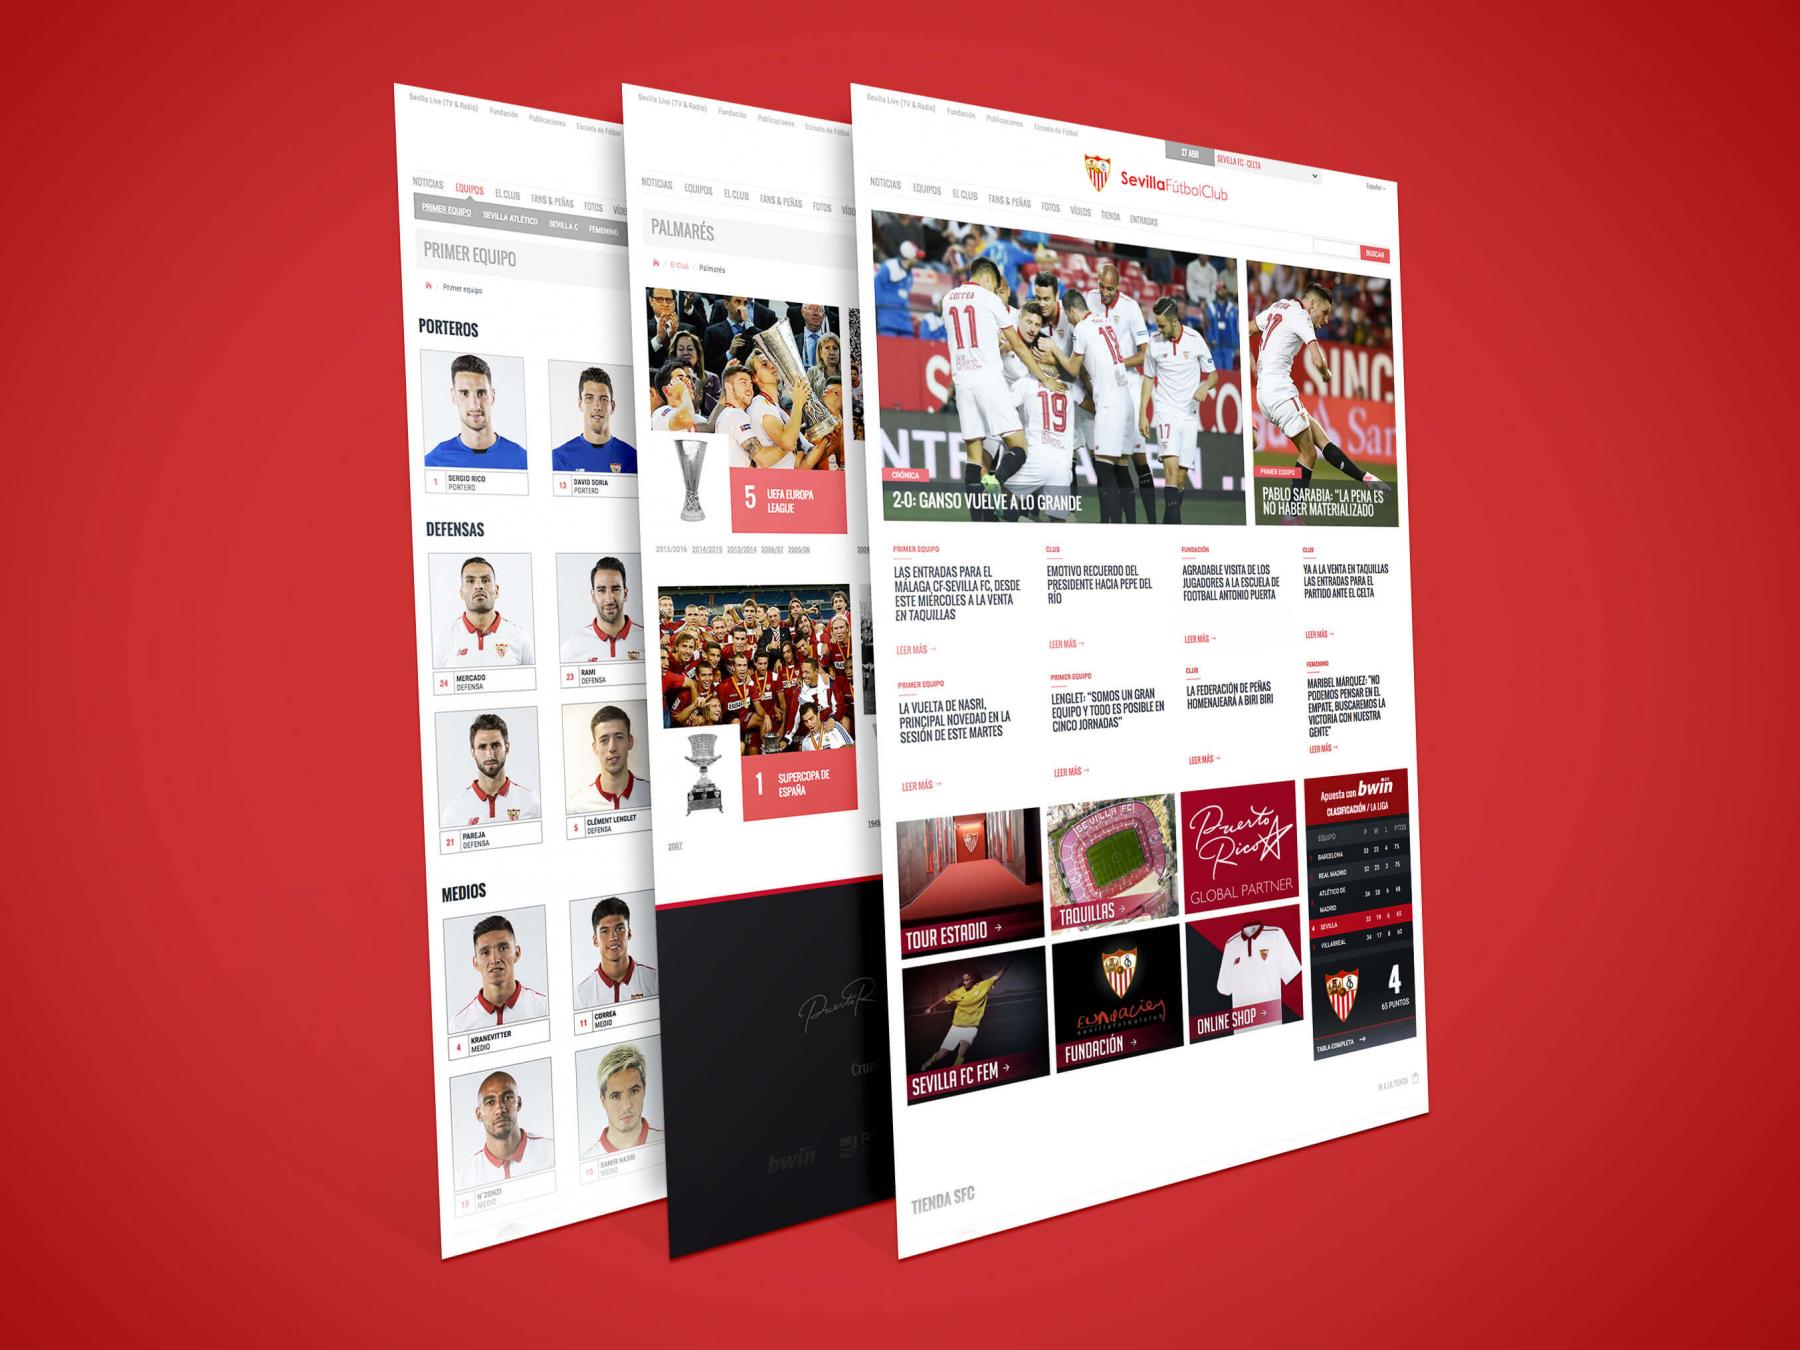 Official website of Sevilla Fútbol Club - Sevilla FC Website